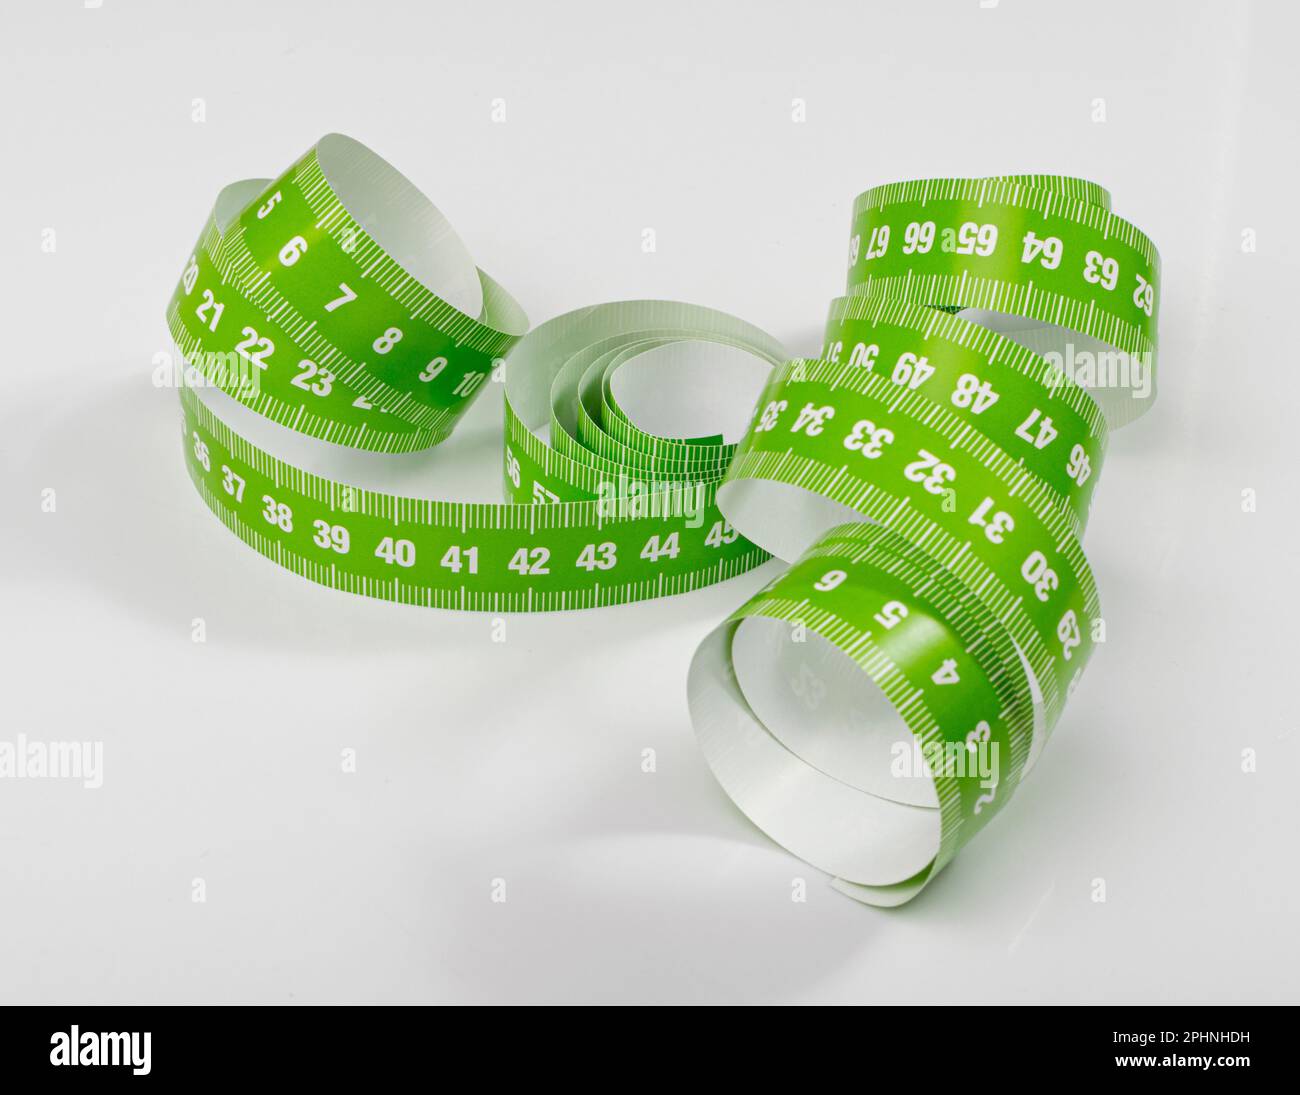 Nastro di misurazione, nastri di misurazione verdi, nastro metrico cucito su sfondo bianco Foto Stock